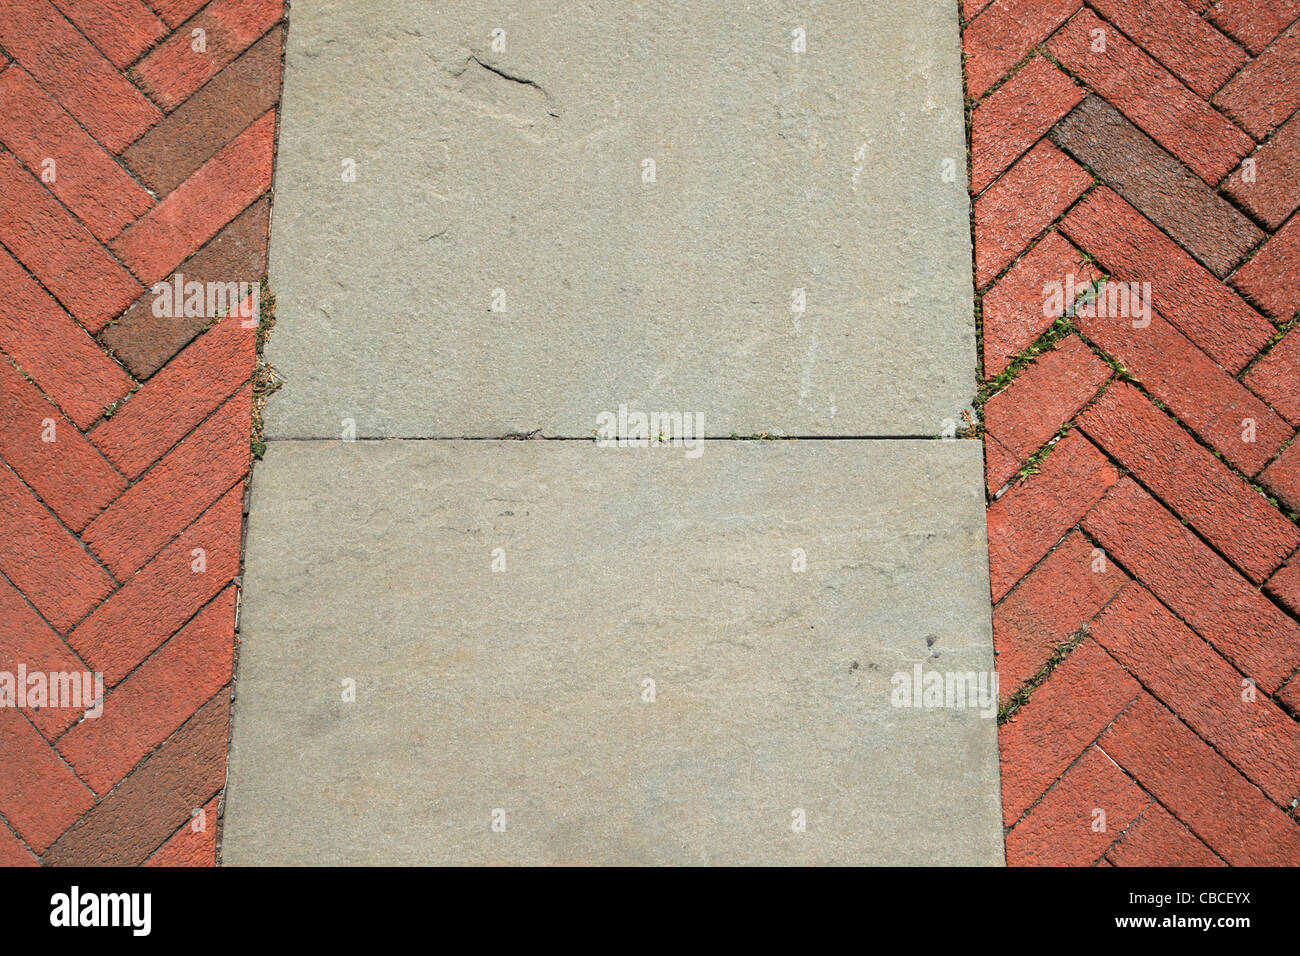 red herringbone brick and gray sand stone walkway detail Stock Photo